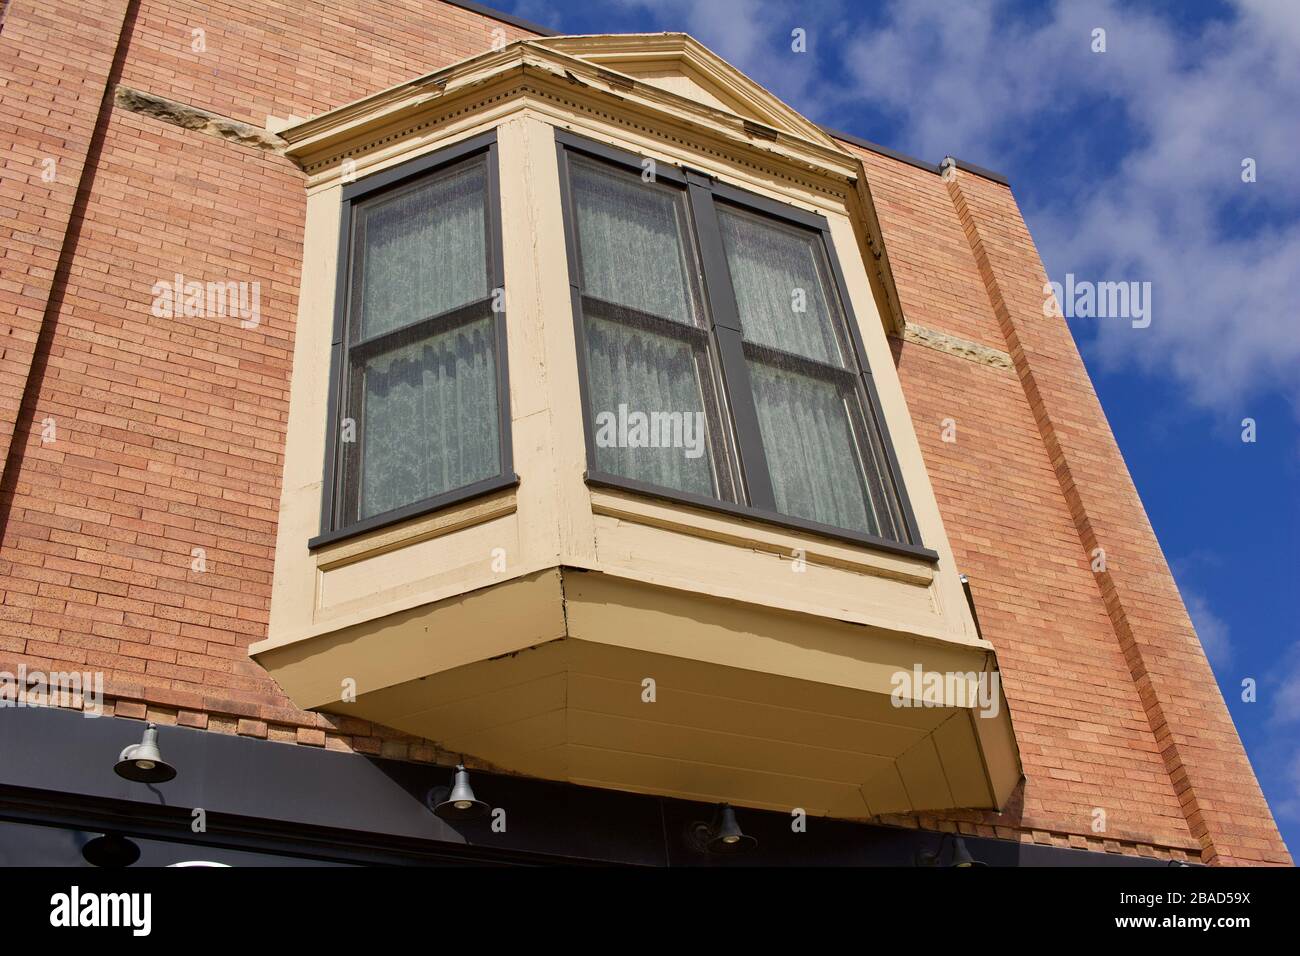 Vue vers le haut d'une texture de bâtiment en briques vintage brun clair avec une grande baie vitrée et un fond bleu ciel Banque D'Images